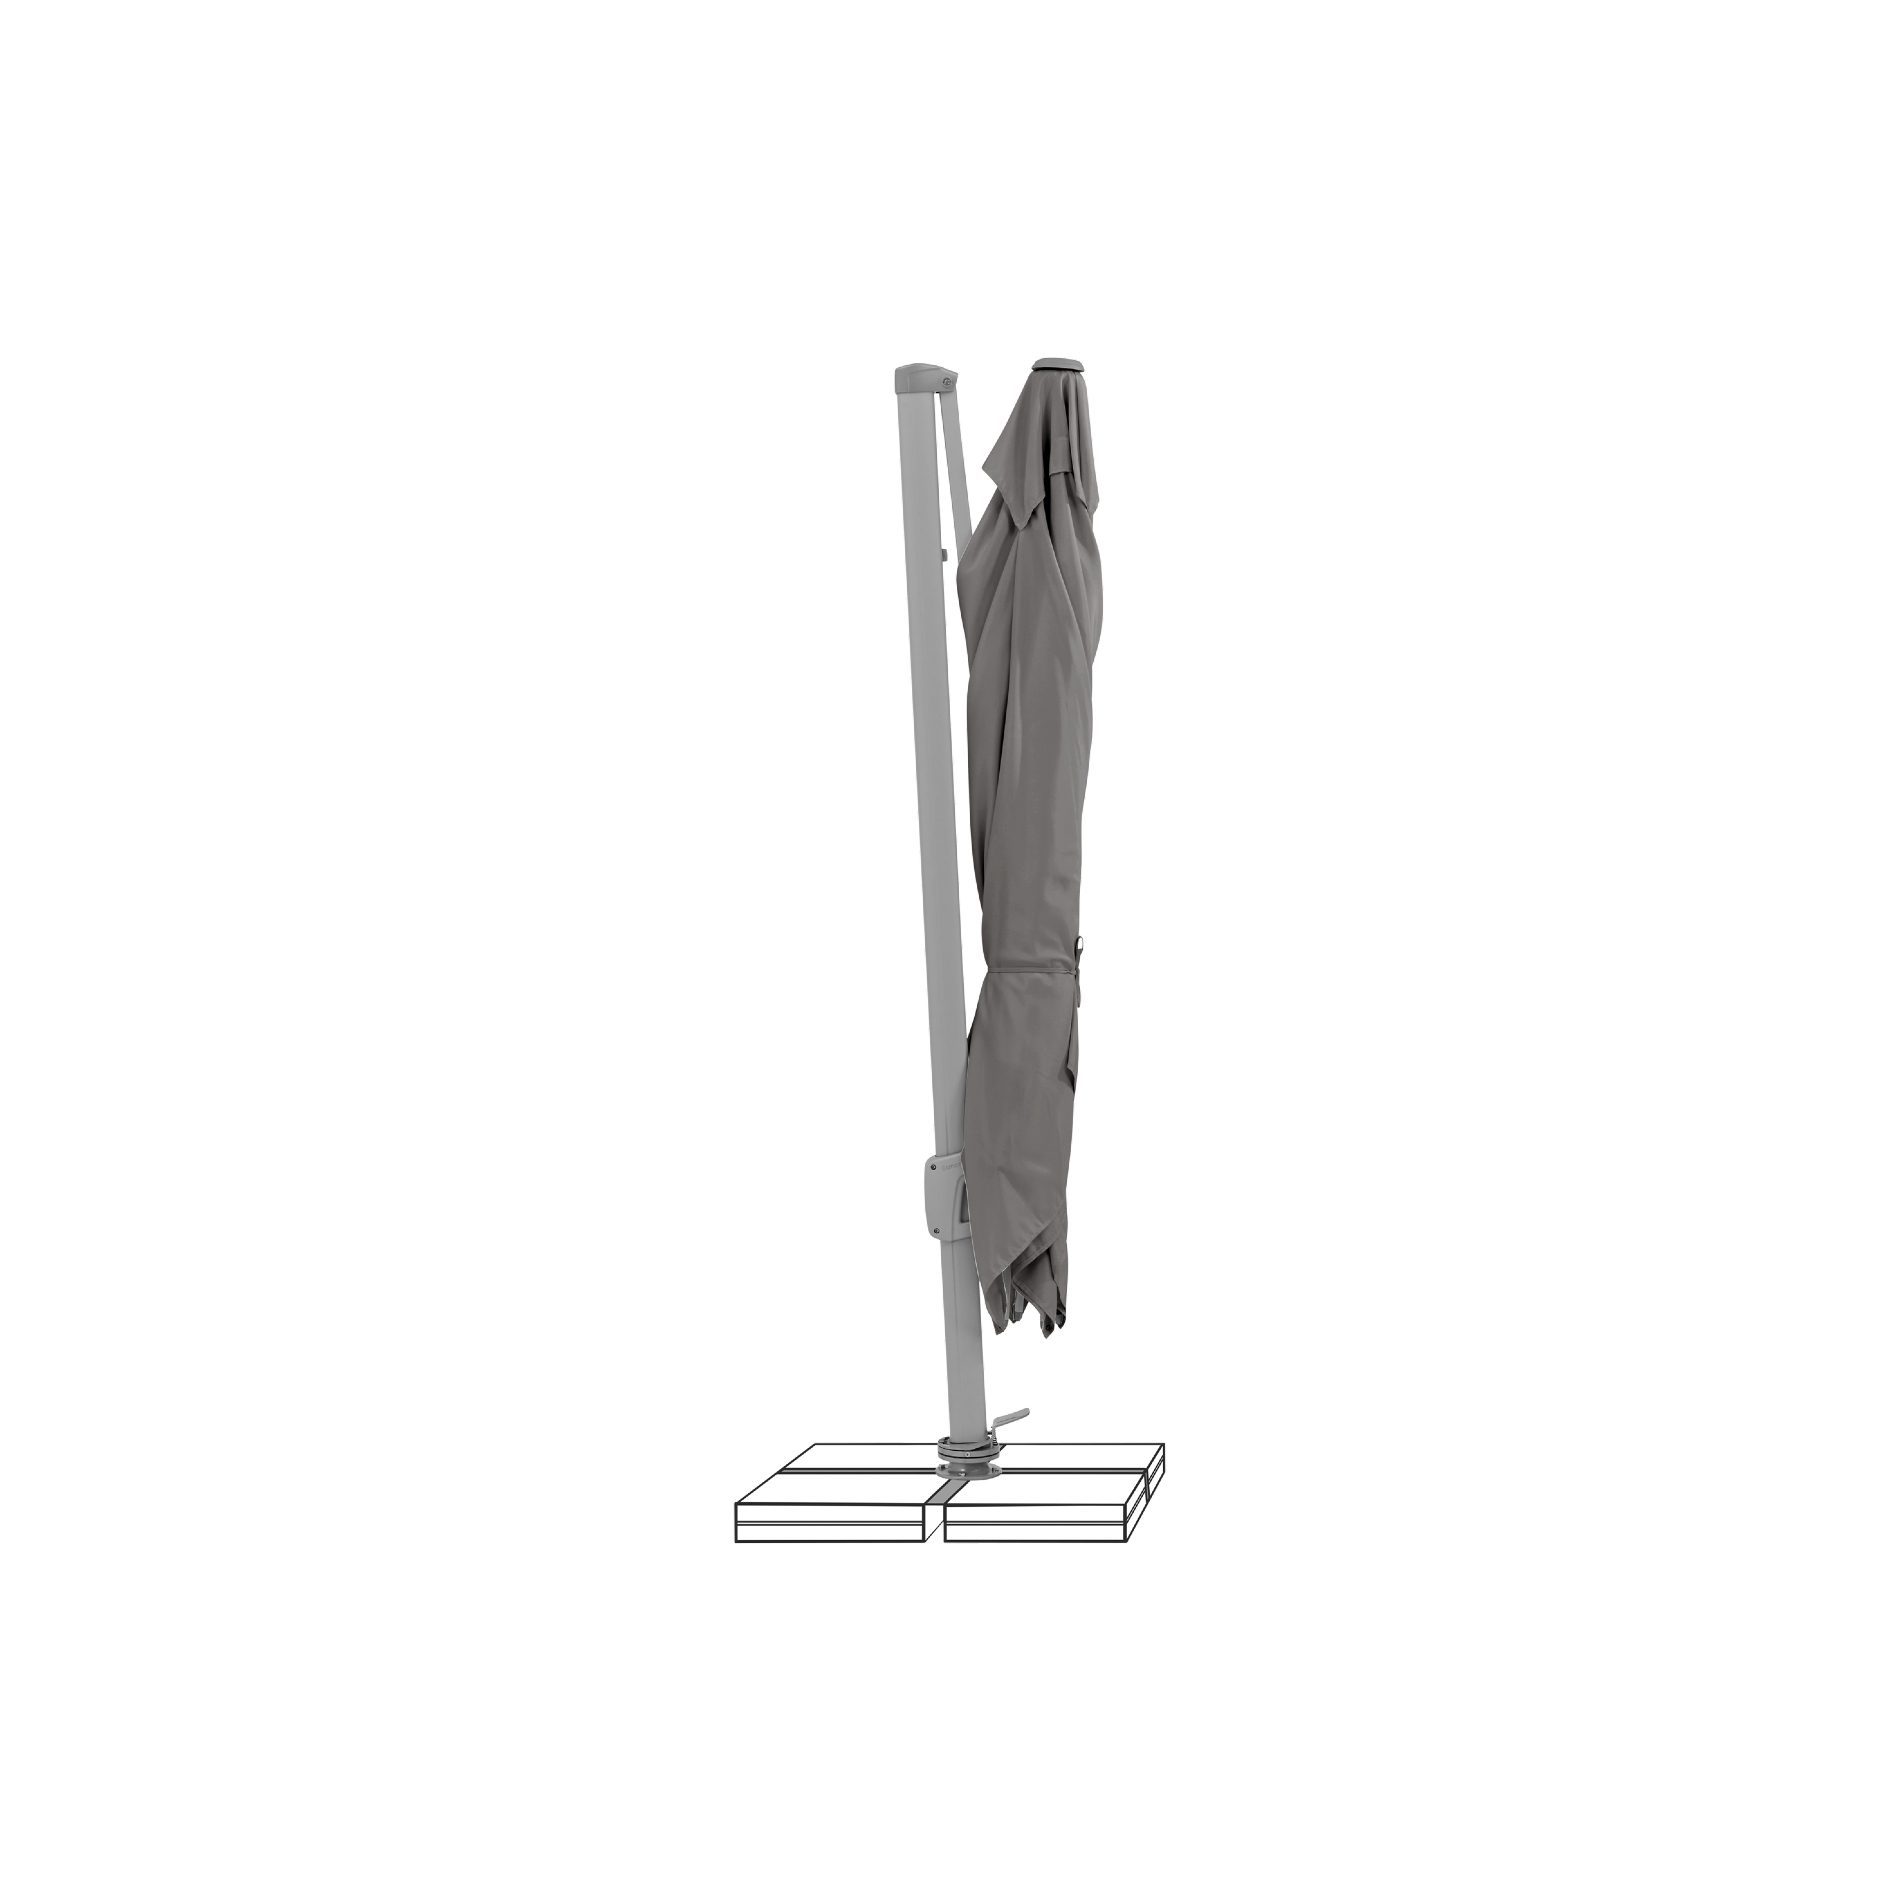 SUNCOMFORT® by GLATZ, Sonnenschirm "Sunflex", Gestellfarbe Texture silver, 300 x 300 cm, Dessin 057- Stonegrey